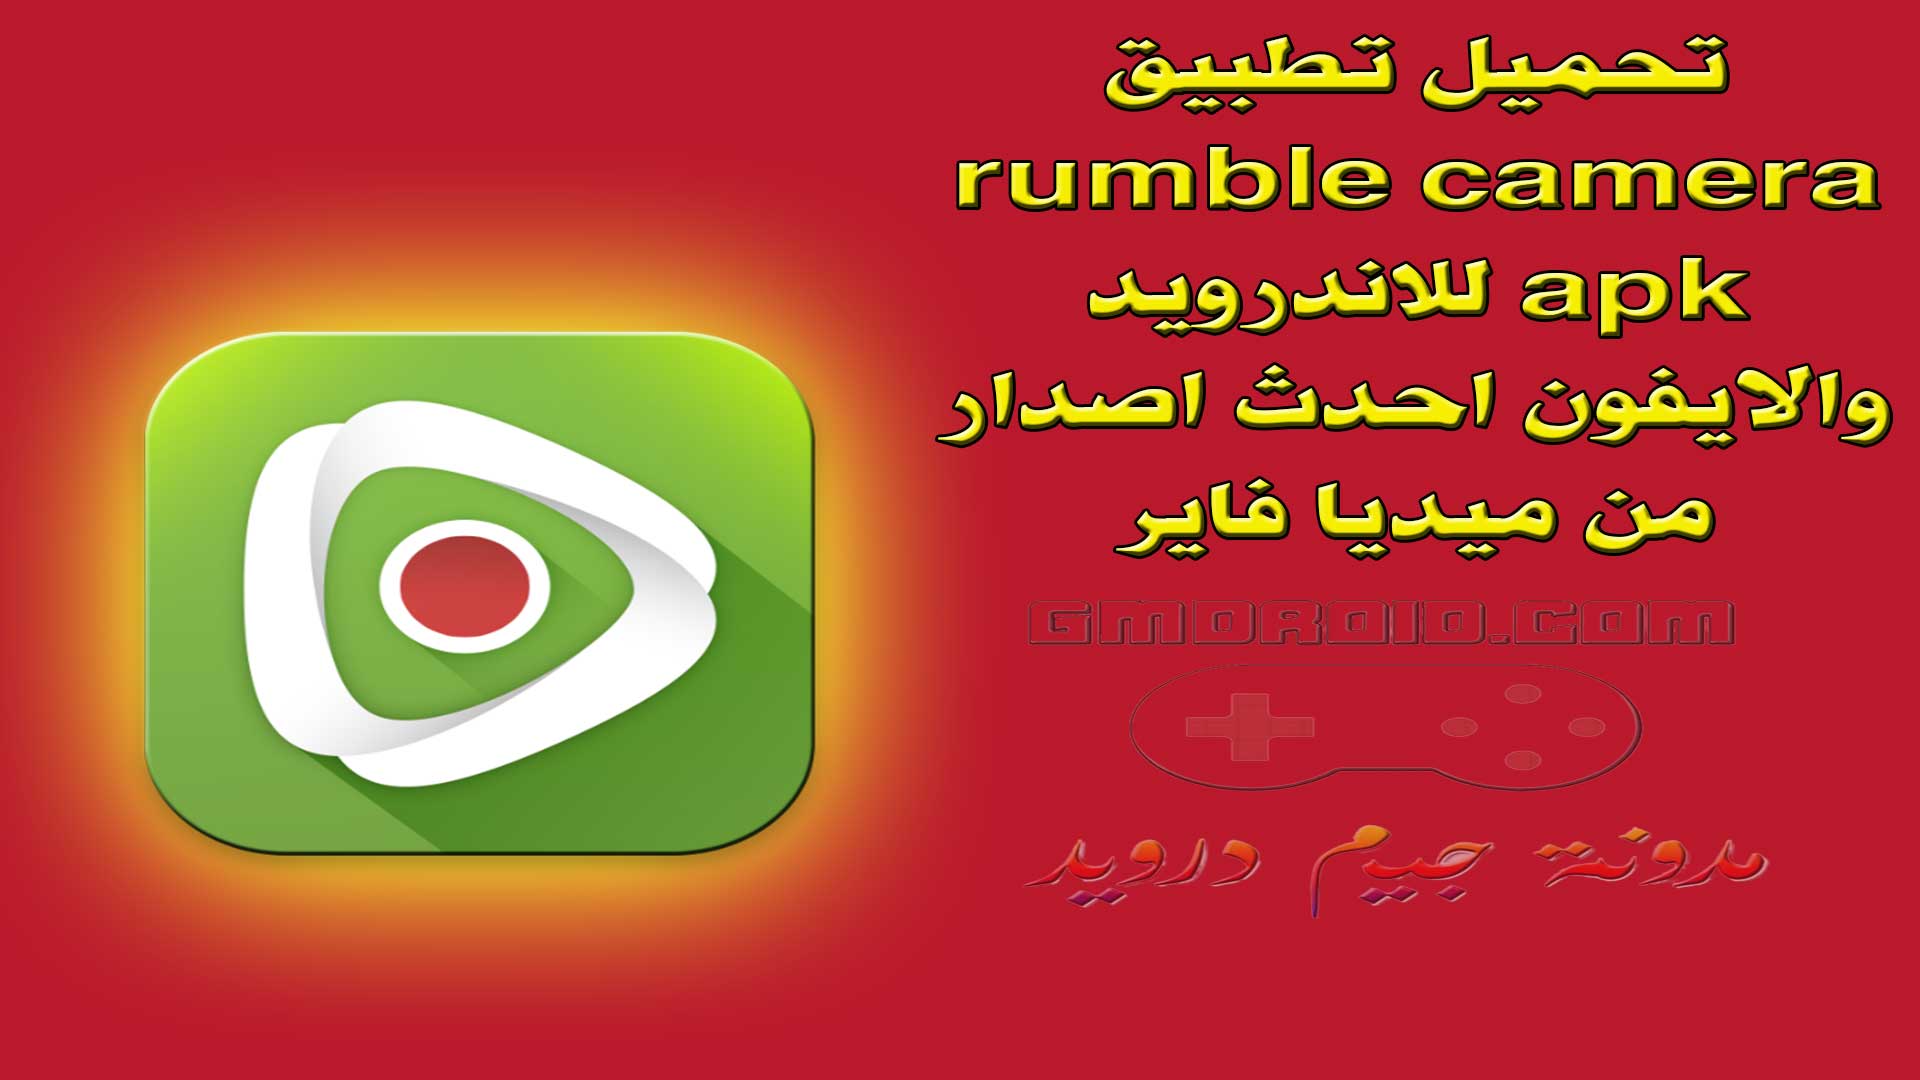 تحميل تطبيق rumble camera apk للاندرويد والايفون احدث اصدار من ميديا فاير